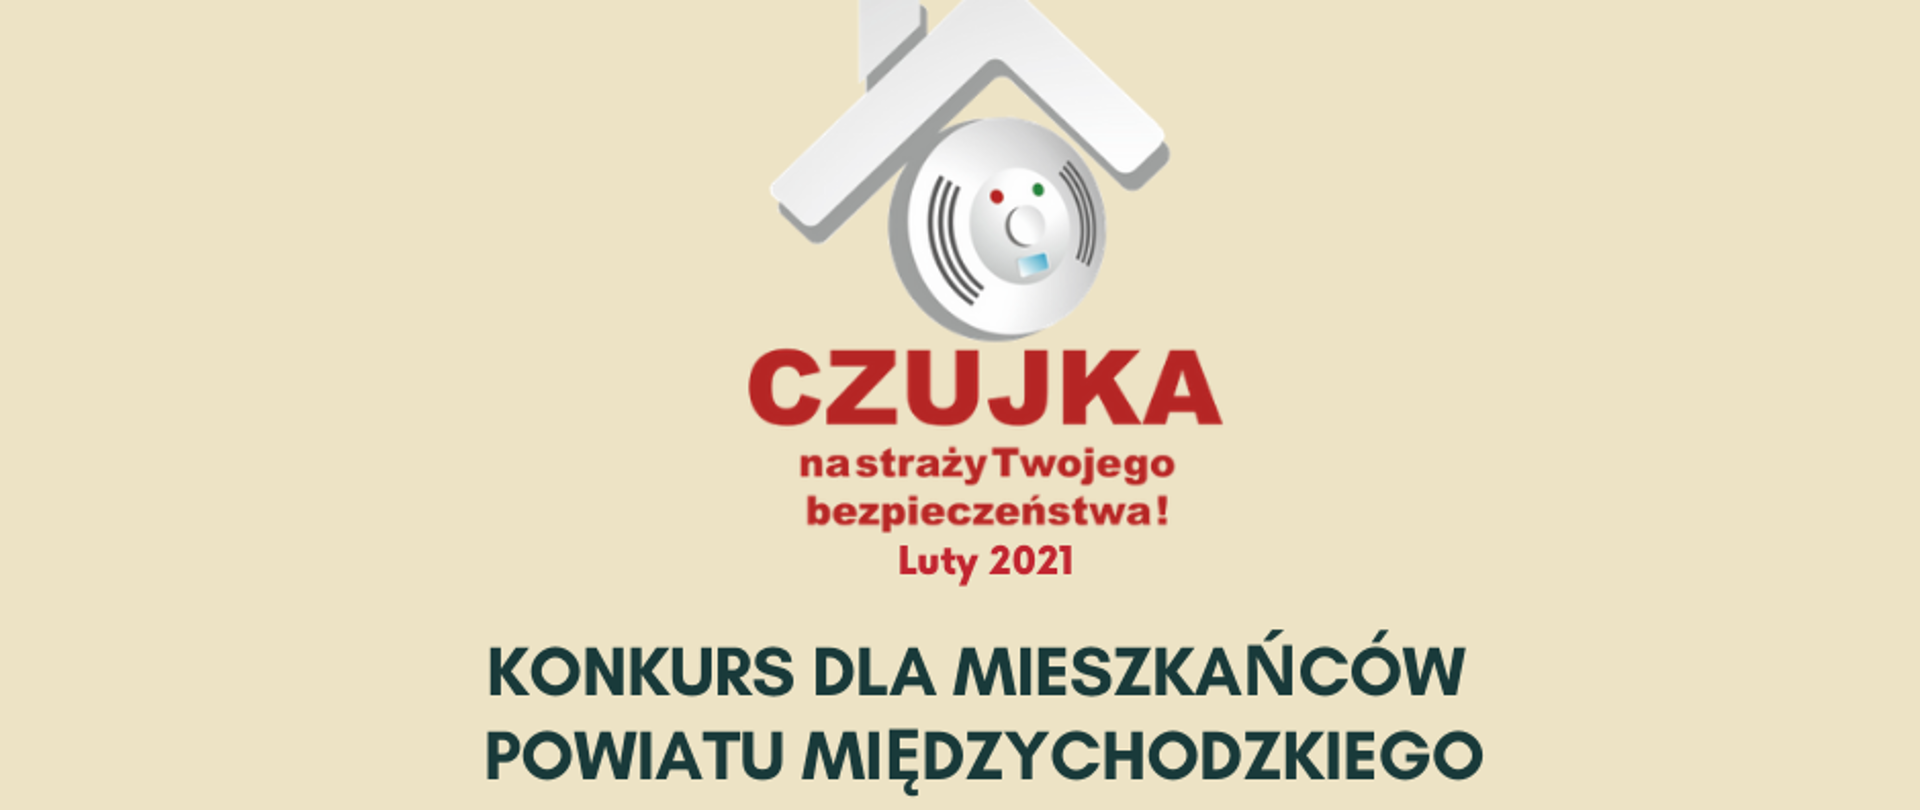 Konkurs dla mieszkańców powiatu międzychodzkiego - Czujka na straży Twojego bezpieczeństwa Luty 2021